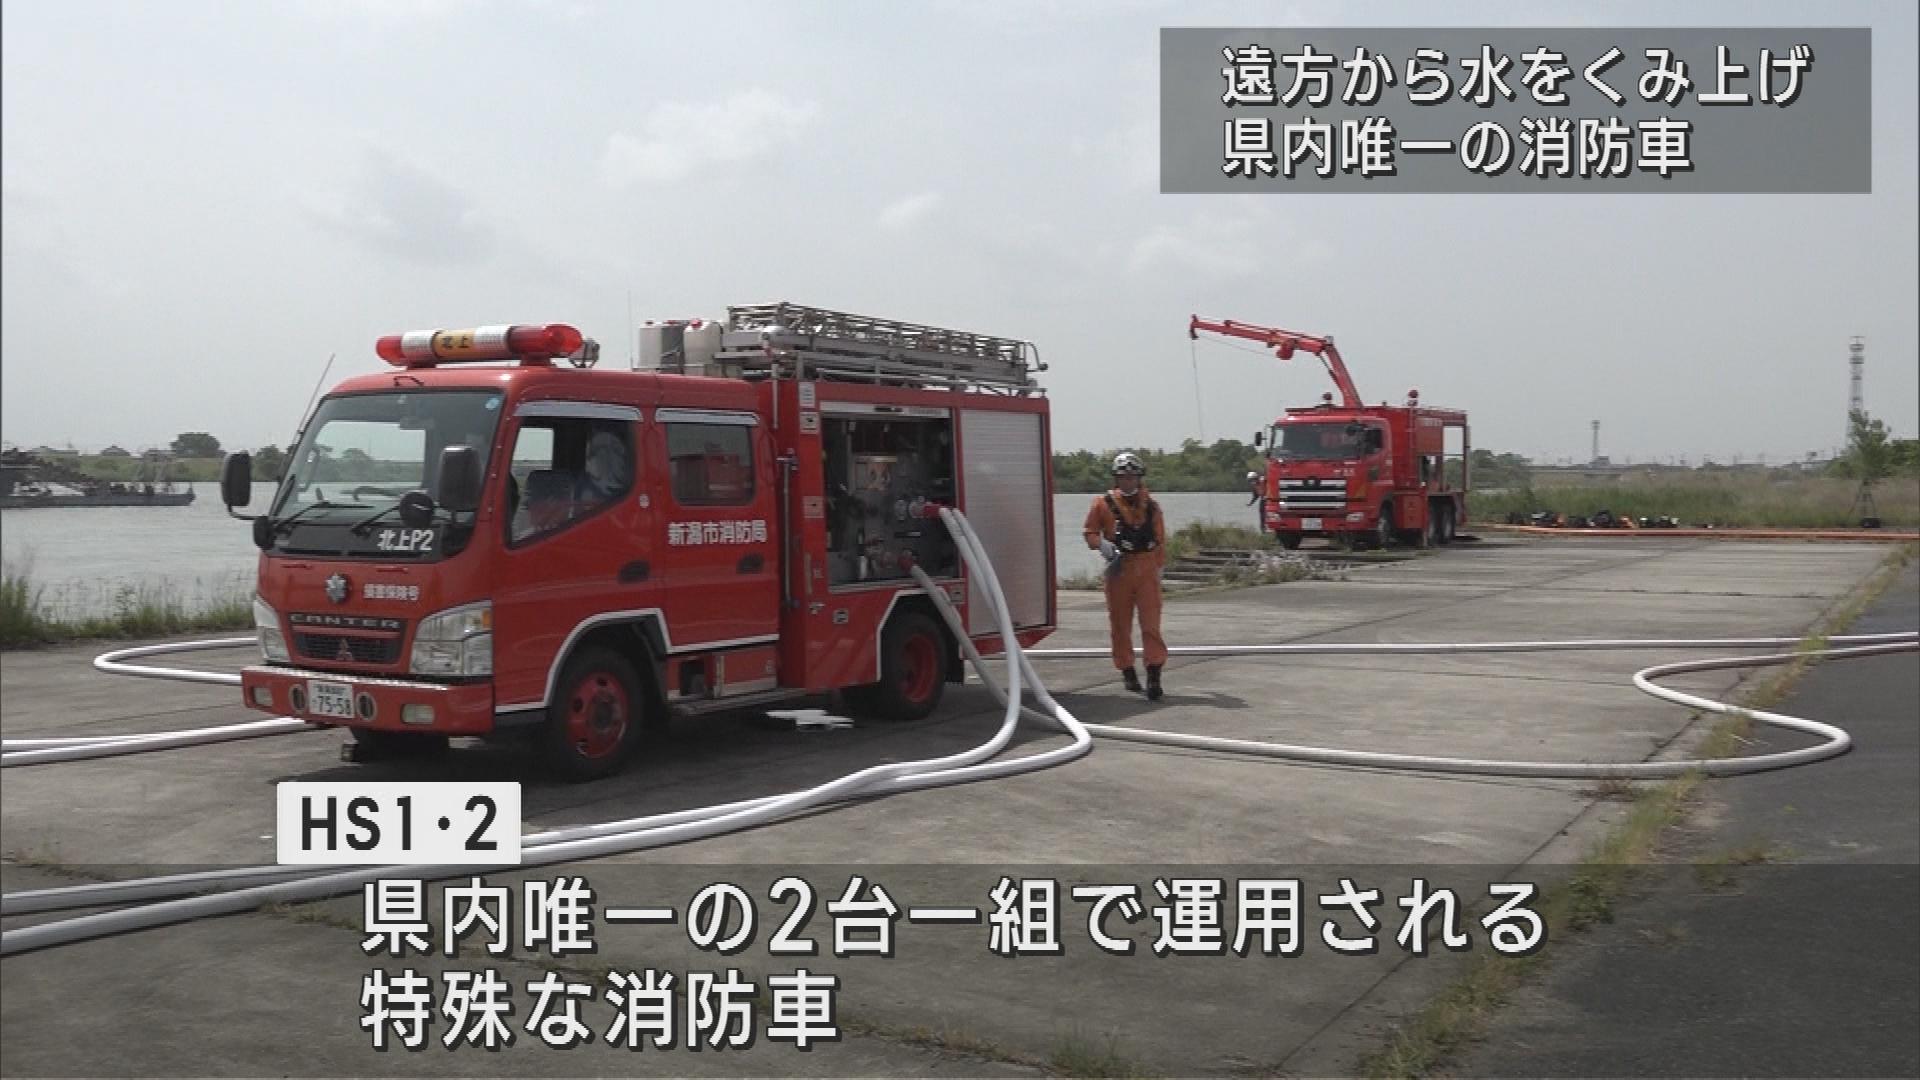 大規模火災に備え 県内唯一2台1組で運用する消防車の訓練【新潟】